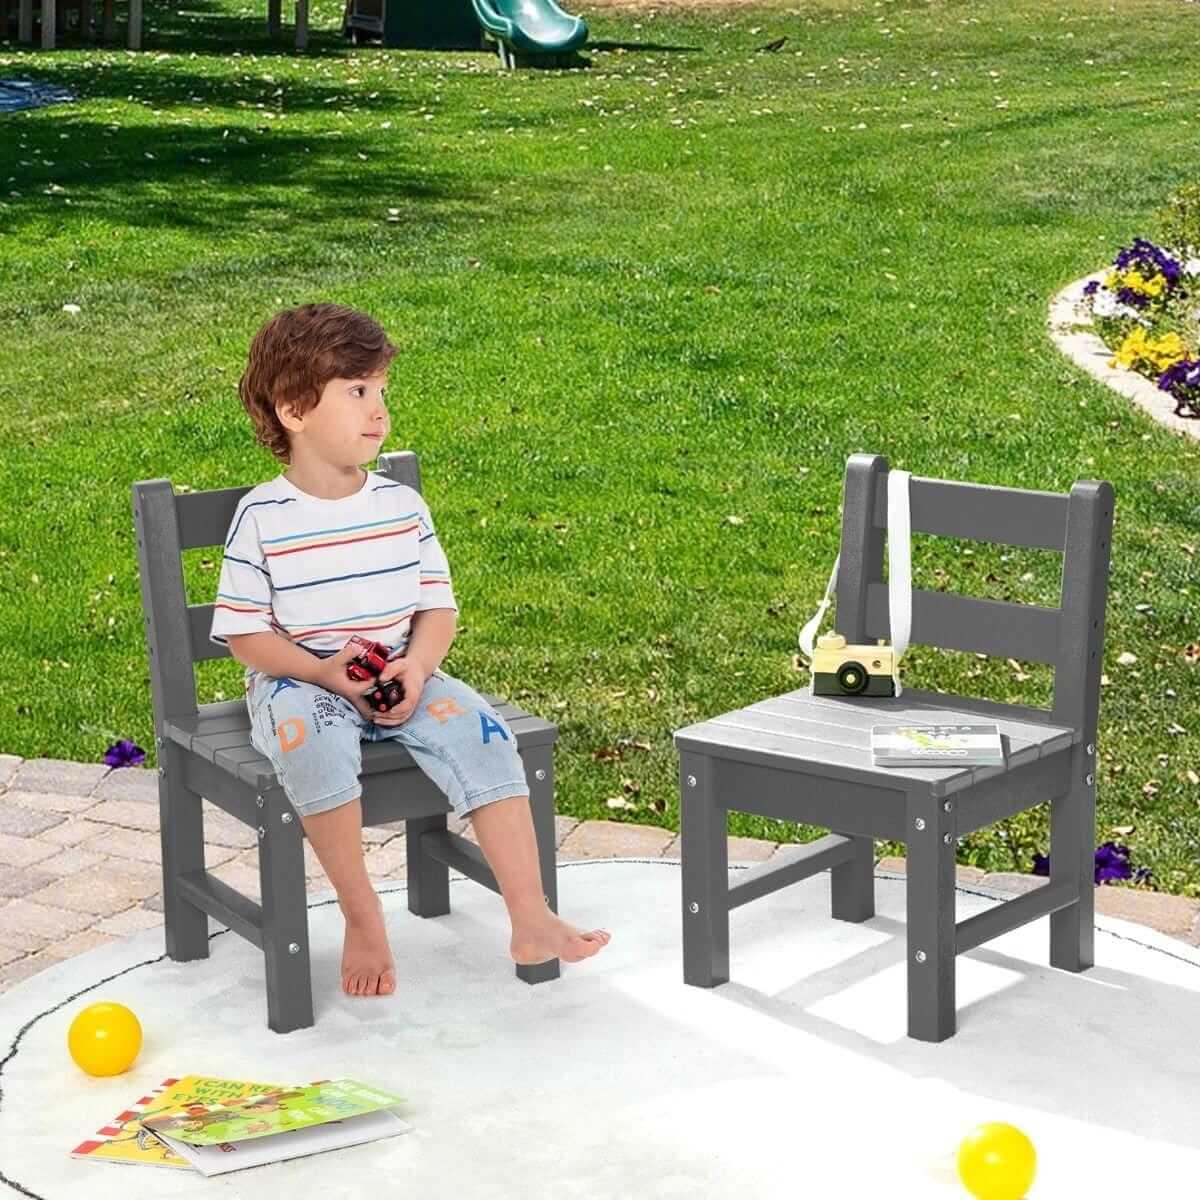 Labai Tvirtos 2 Vaikiškos Kėdutės Tinka Ir Lauke Pilkos 34 x 33 x 57 cm Staliukai Kėdutės